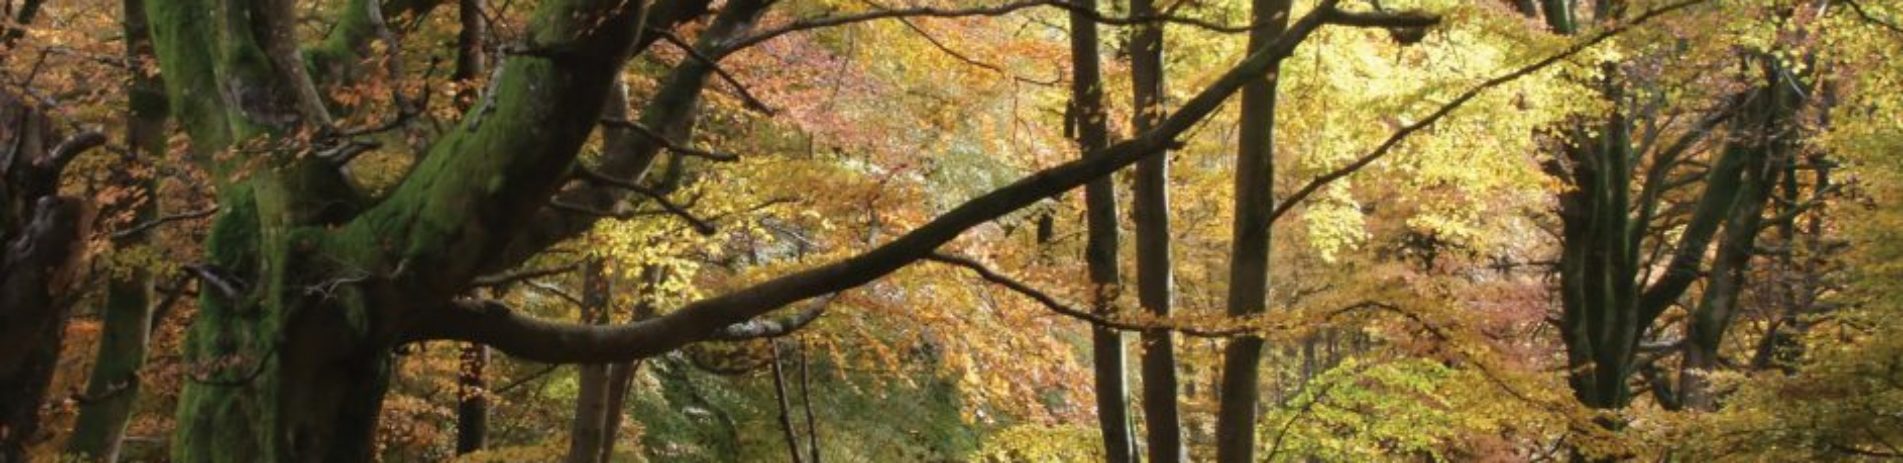 beechwood-in-autumn-leaves-brown-orange-green